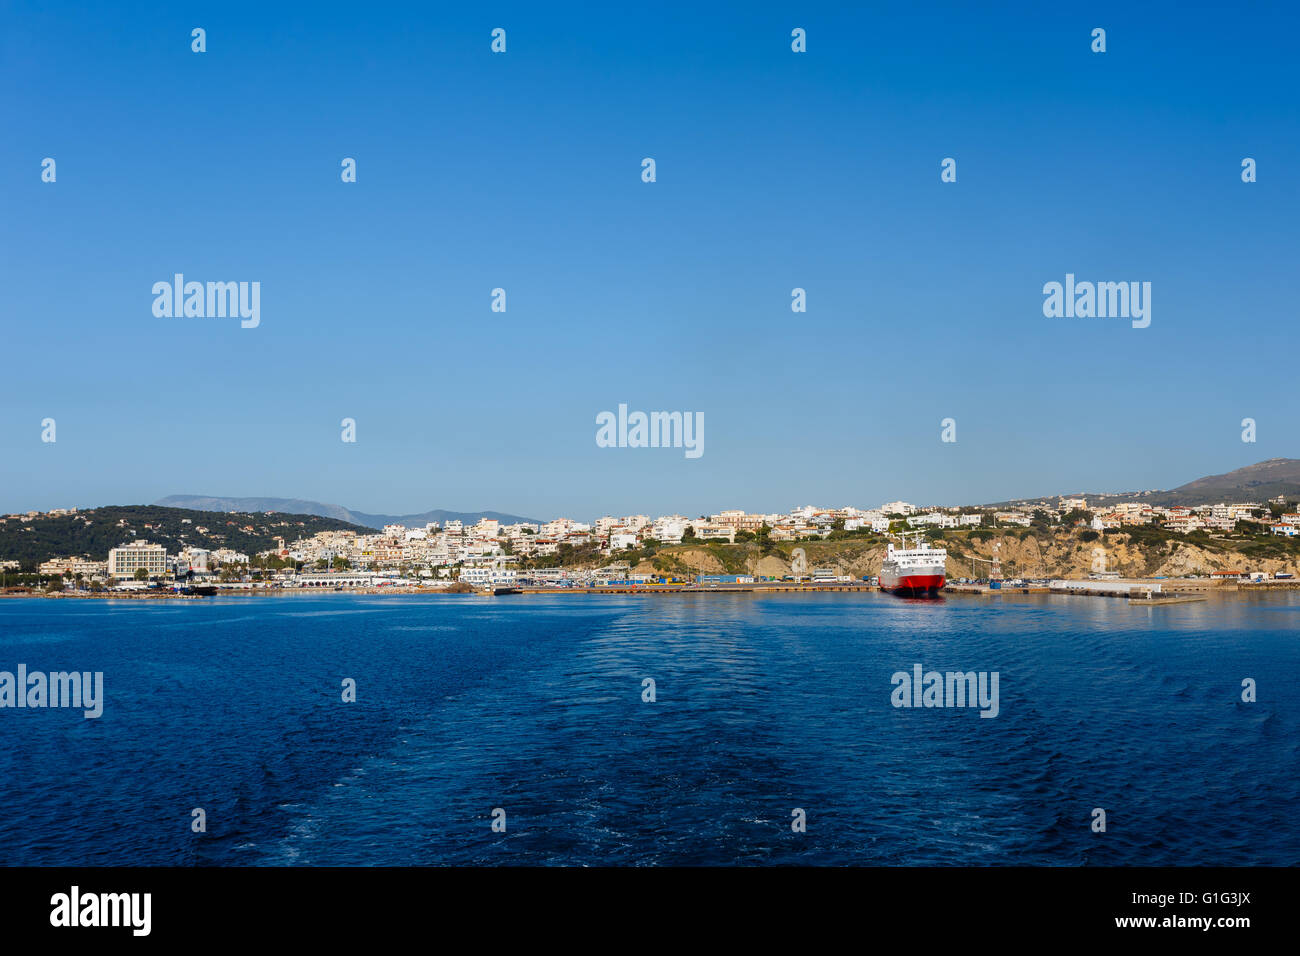 Rafina Hafen mit verankerten Schiff gegen ein blauer Himmel und blaues Wasser in Euböa, Griechenland Stockfoto